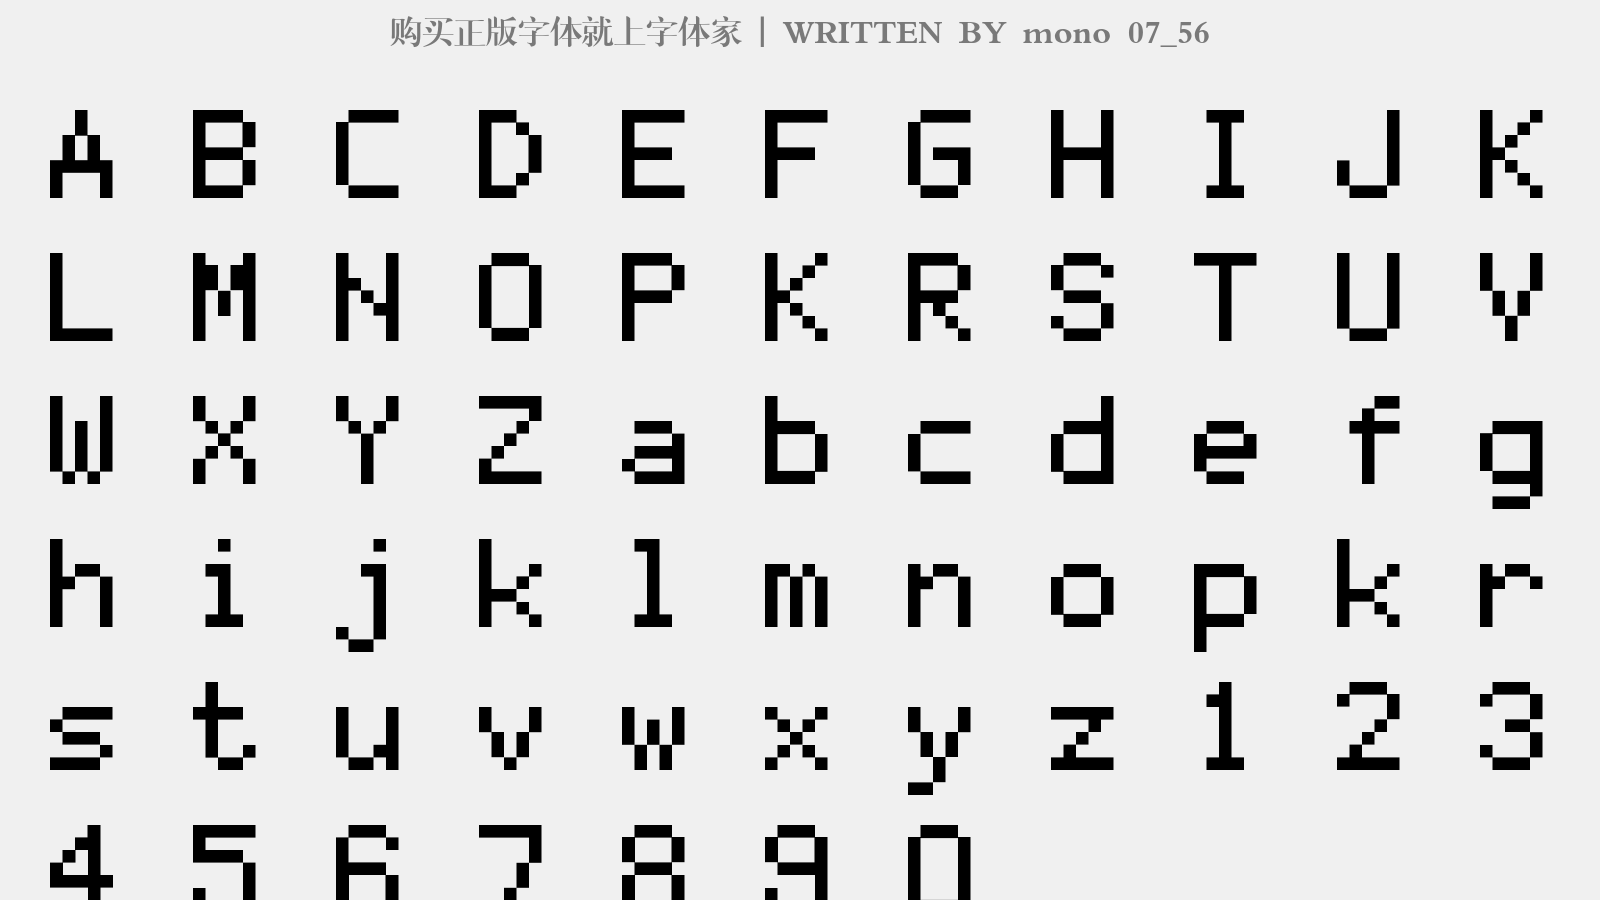 mono 07_56 - 大写字母/小写字母/数字